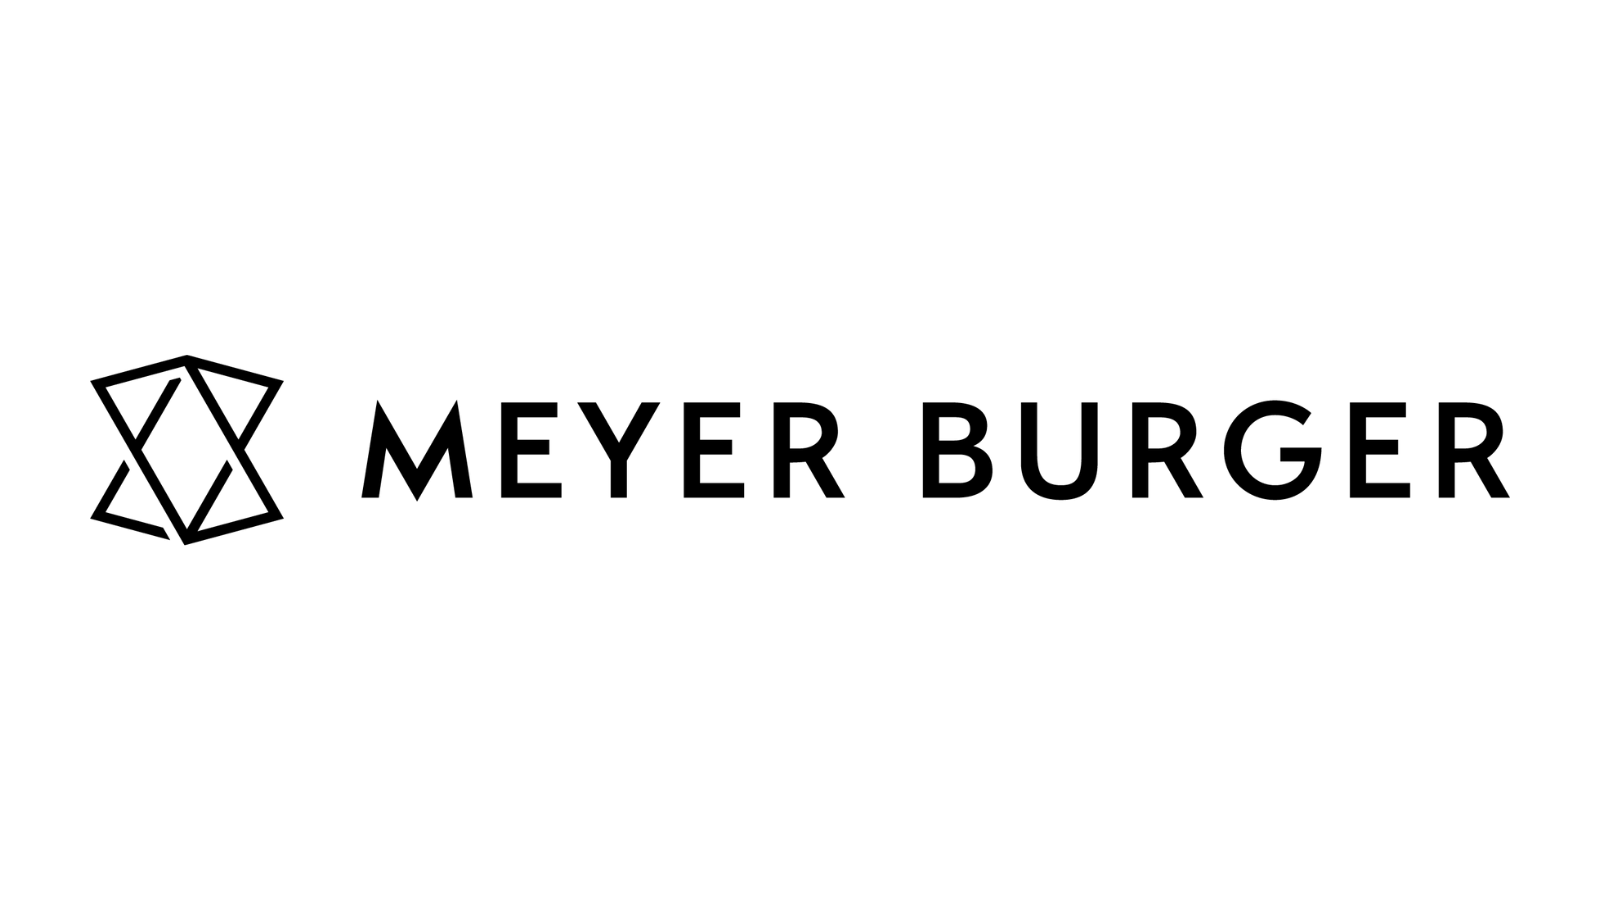 OMR Logo